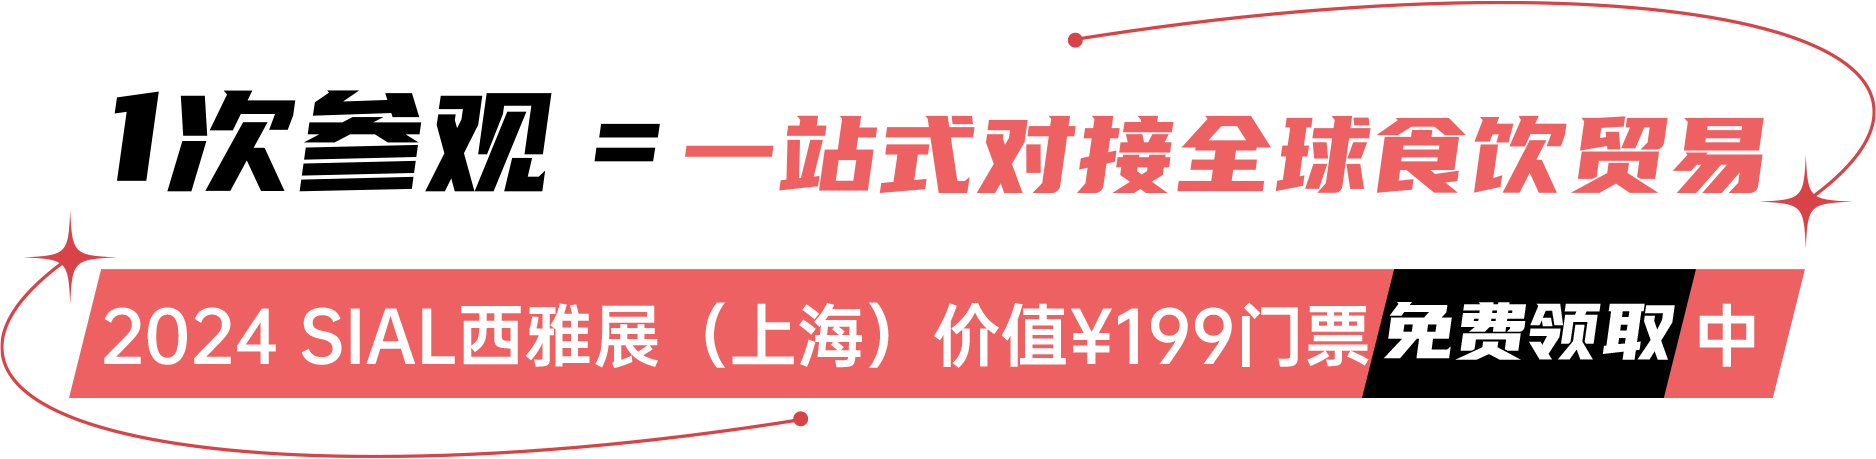 2024 SIAL西雅展（上海）价值¥199门票免费领取中